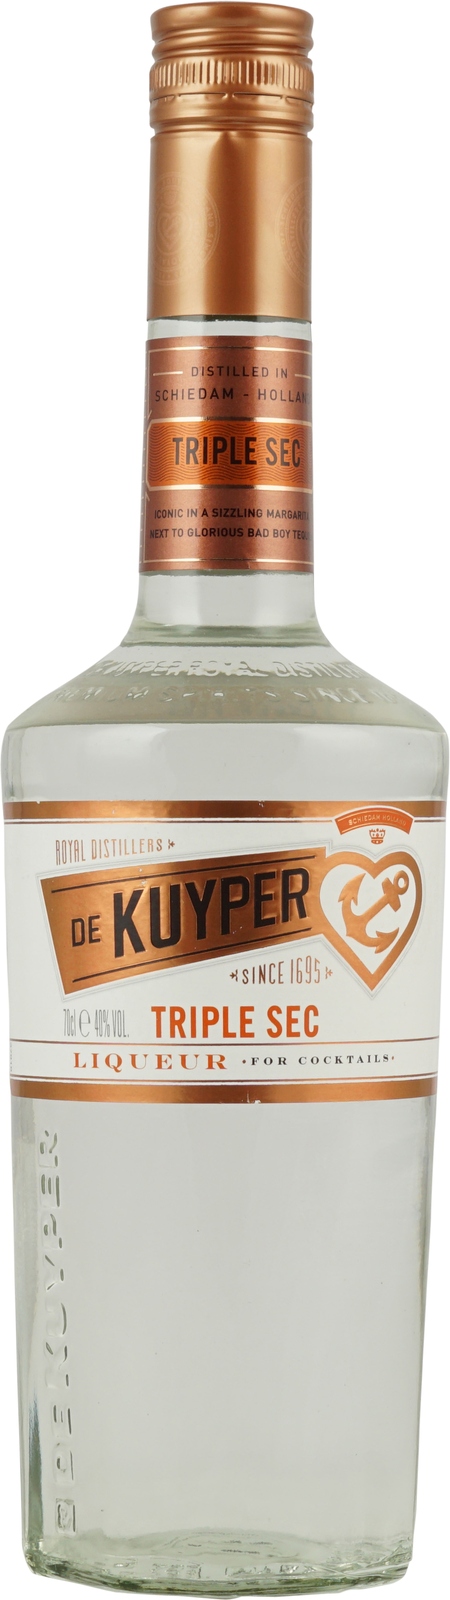 De Kuyper Triple Sec (Curaçao Orange) Liqueur im Shop kaufen.